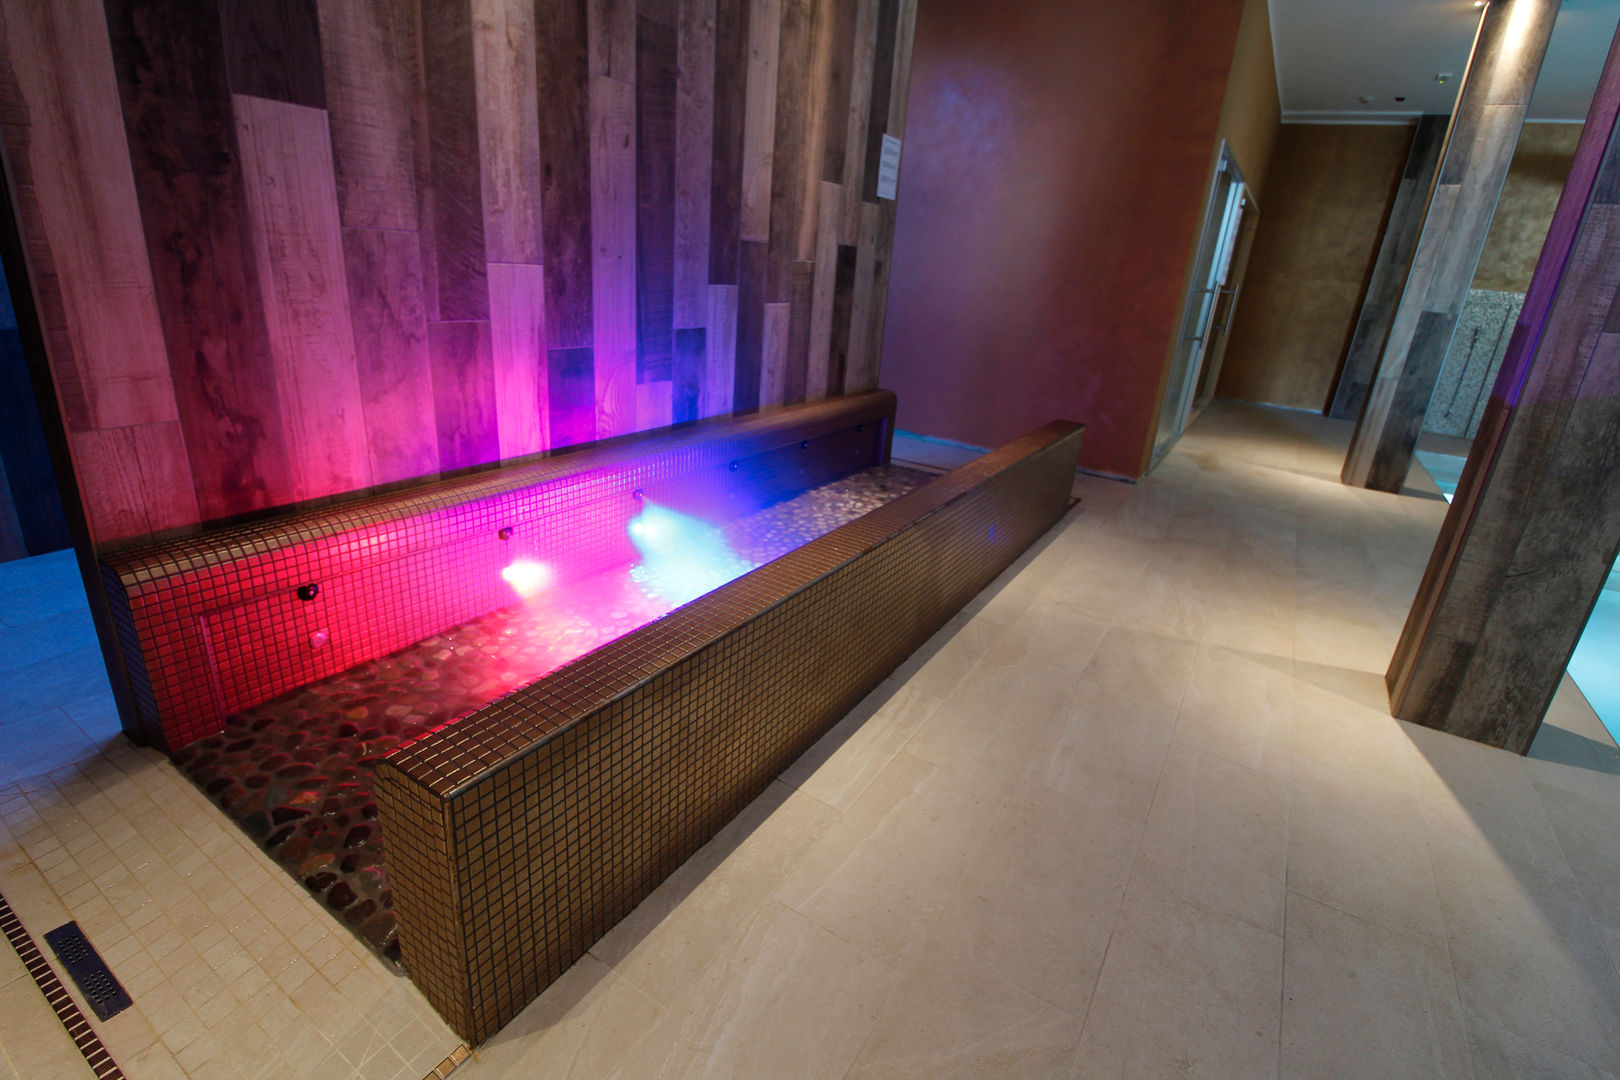 Centro Benessere completo di bagno turco , sauna , piscina riscaldata , percorso kneipp , docce o percorso emozionale., Aquazzura Piscine Aquazzura Piscine Bedrijfsruimten Hotels